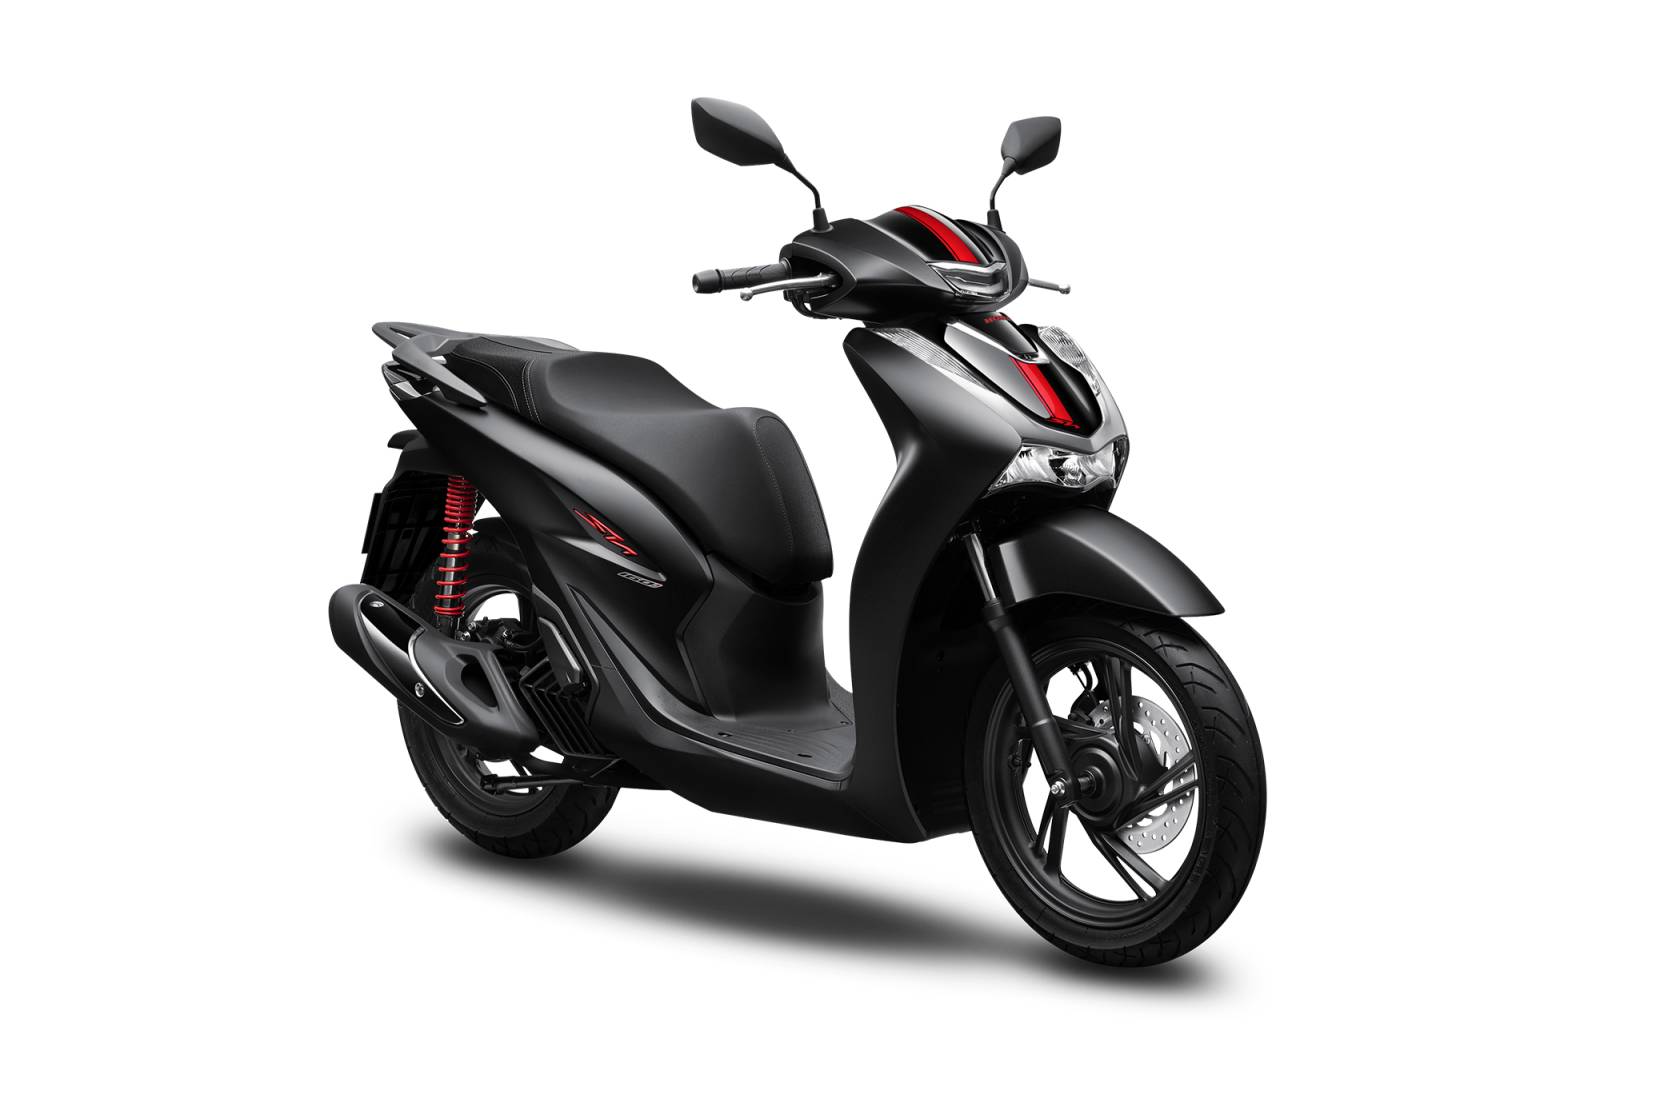 Honda Việt Nam ra mắt SH160i và SH125i mới: thiết kế giữ nguyên, bản cao nhất giá 101,49 triệu